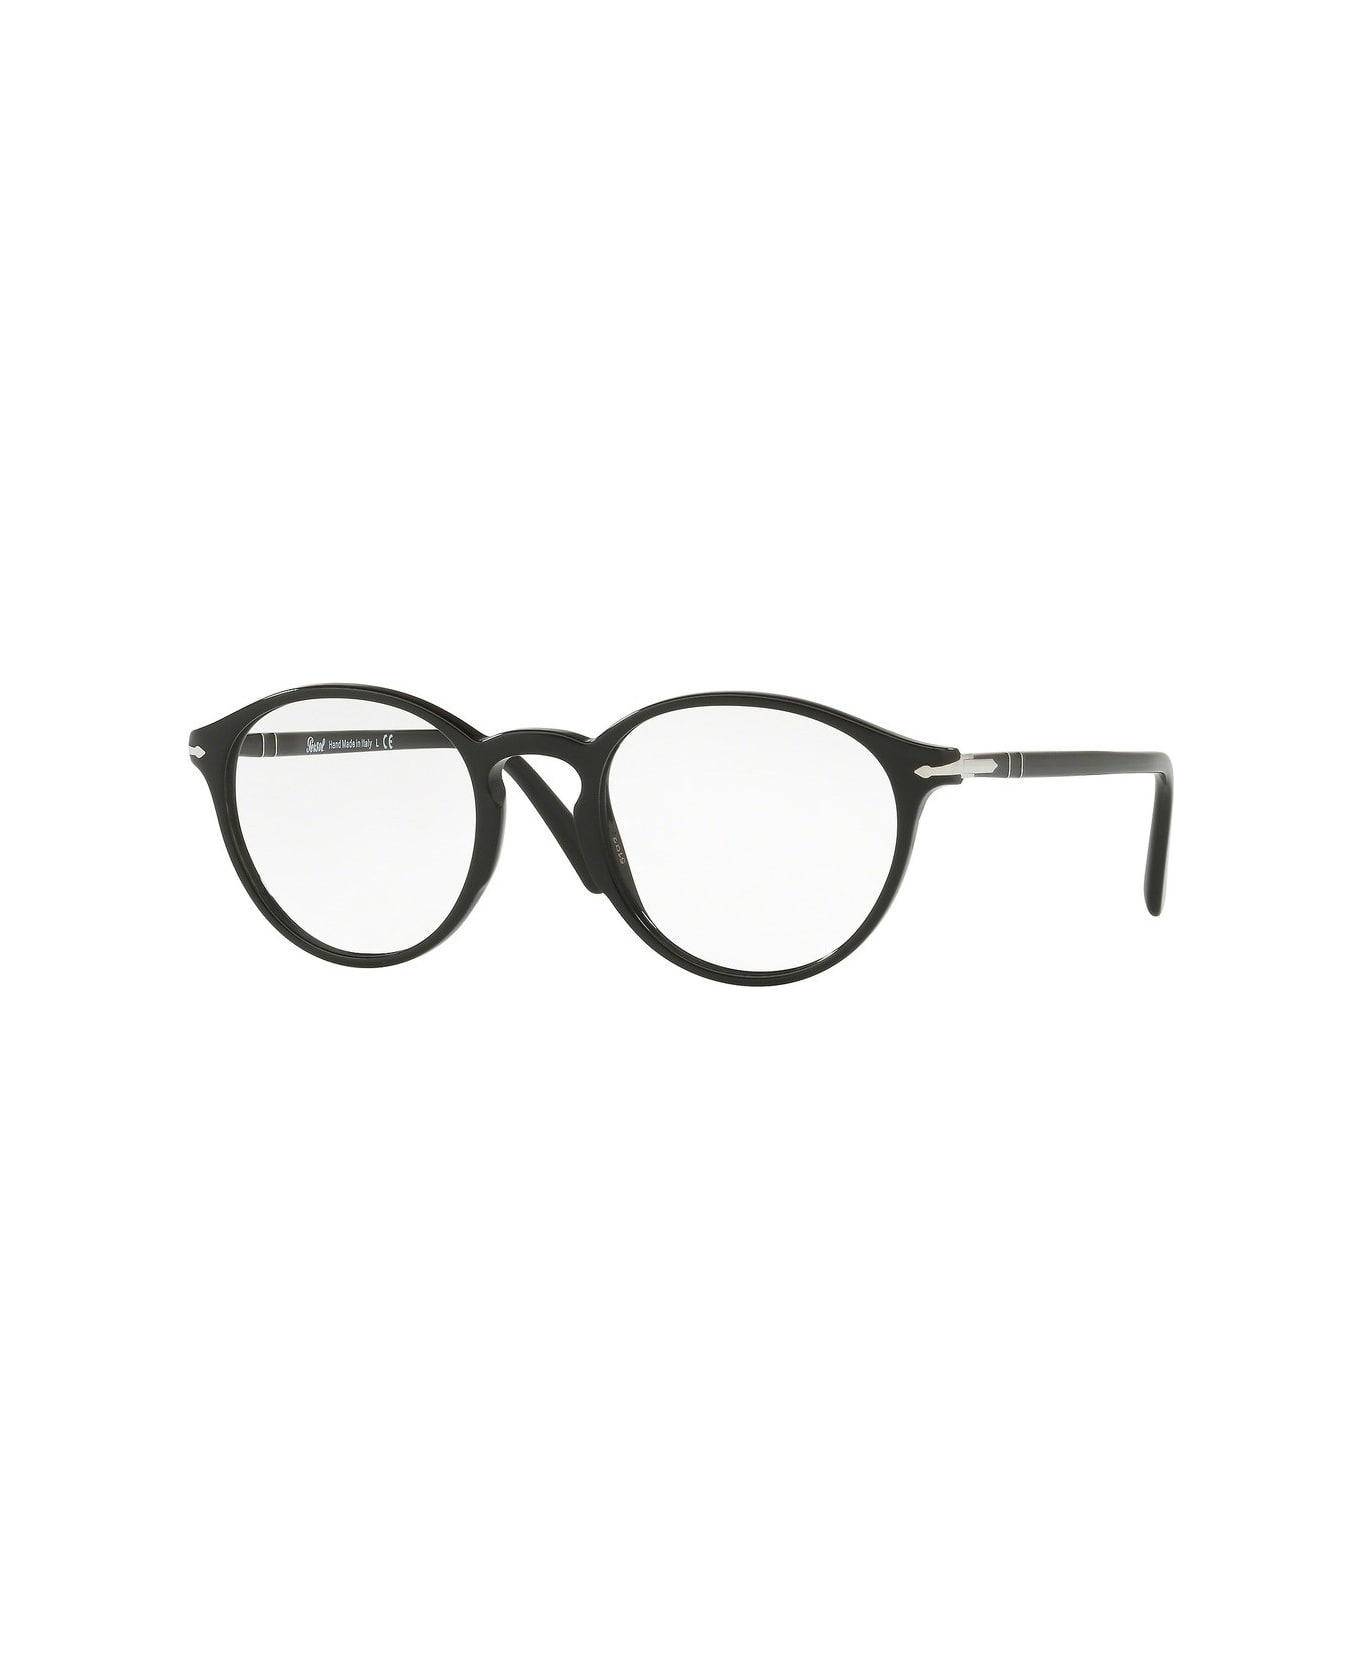 Persol Po3174v Glasses - Nero